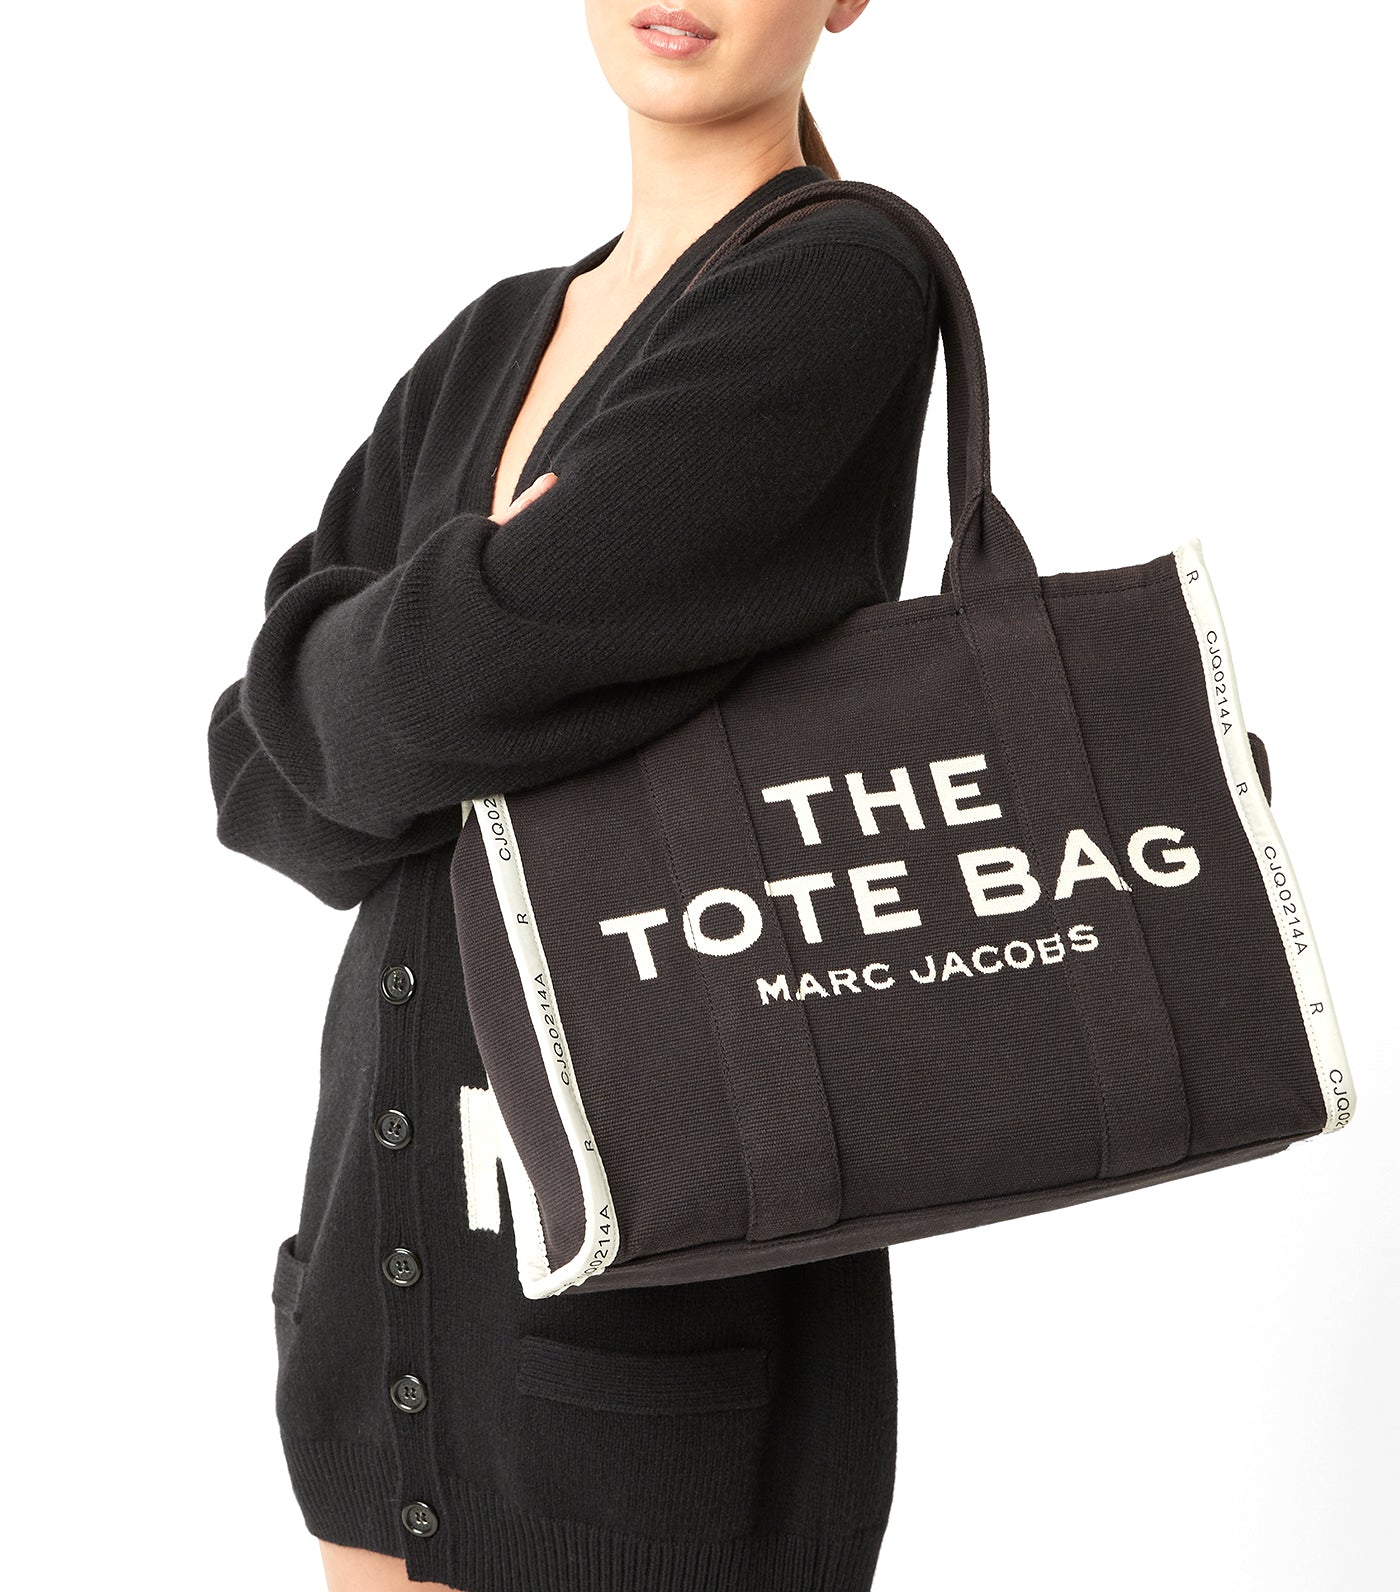 The Jacquard Large Tote Bag Black